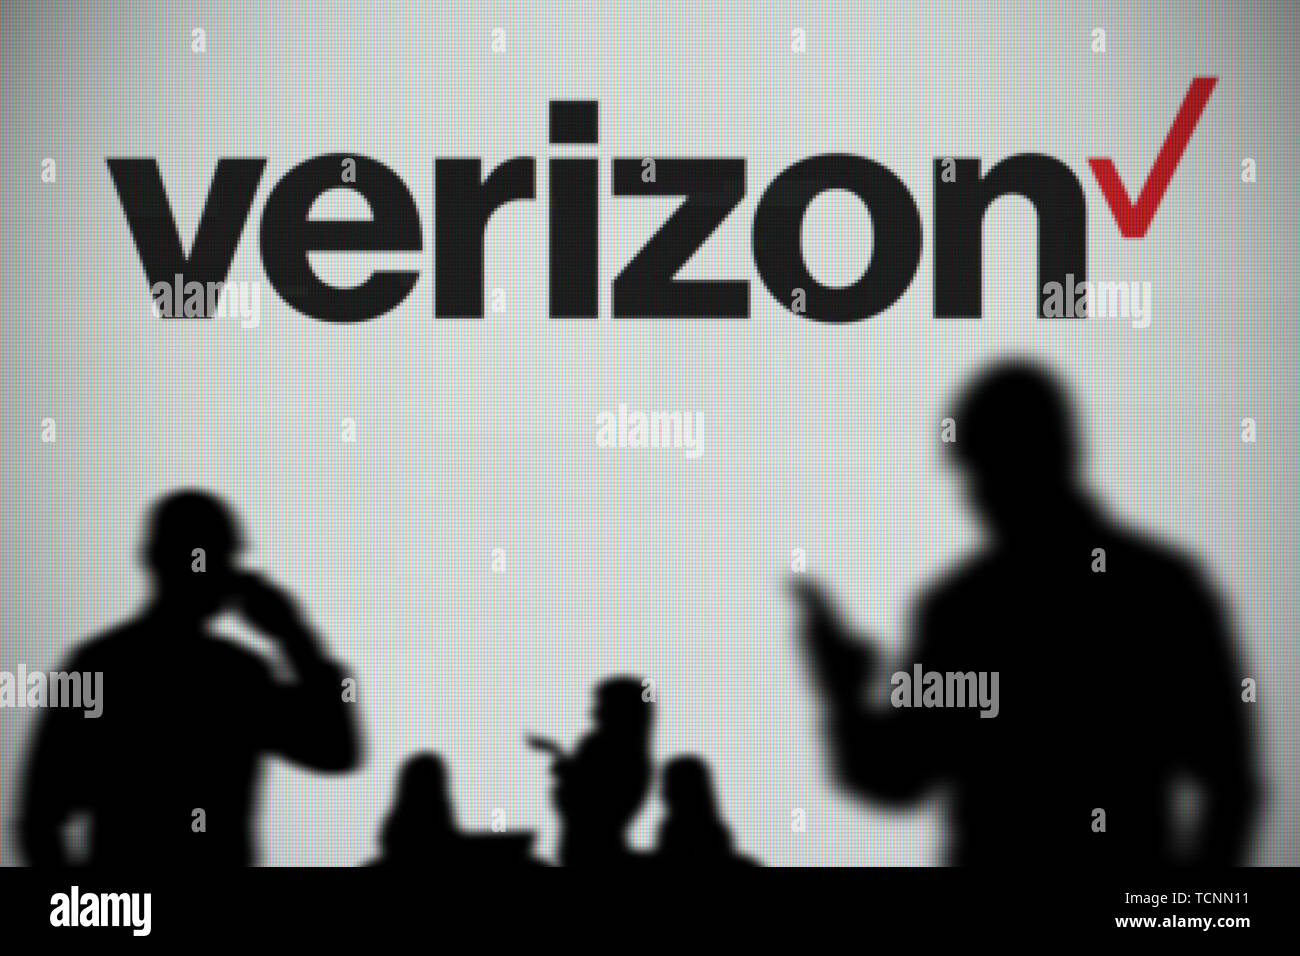 Il logo Verizon è visto su uno schermo a LED in background mentre si profila una persona utilizza uno smartphone in primo piano (solo uso editoriale) Foto Stock